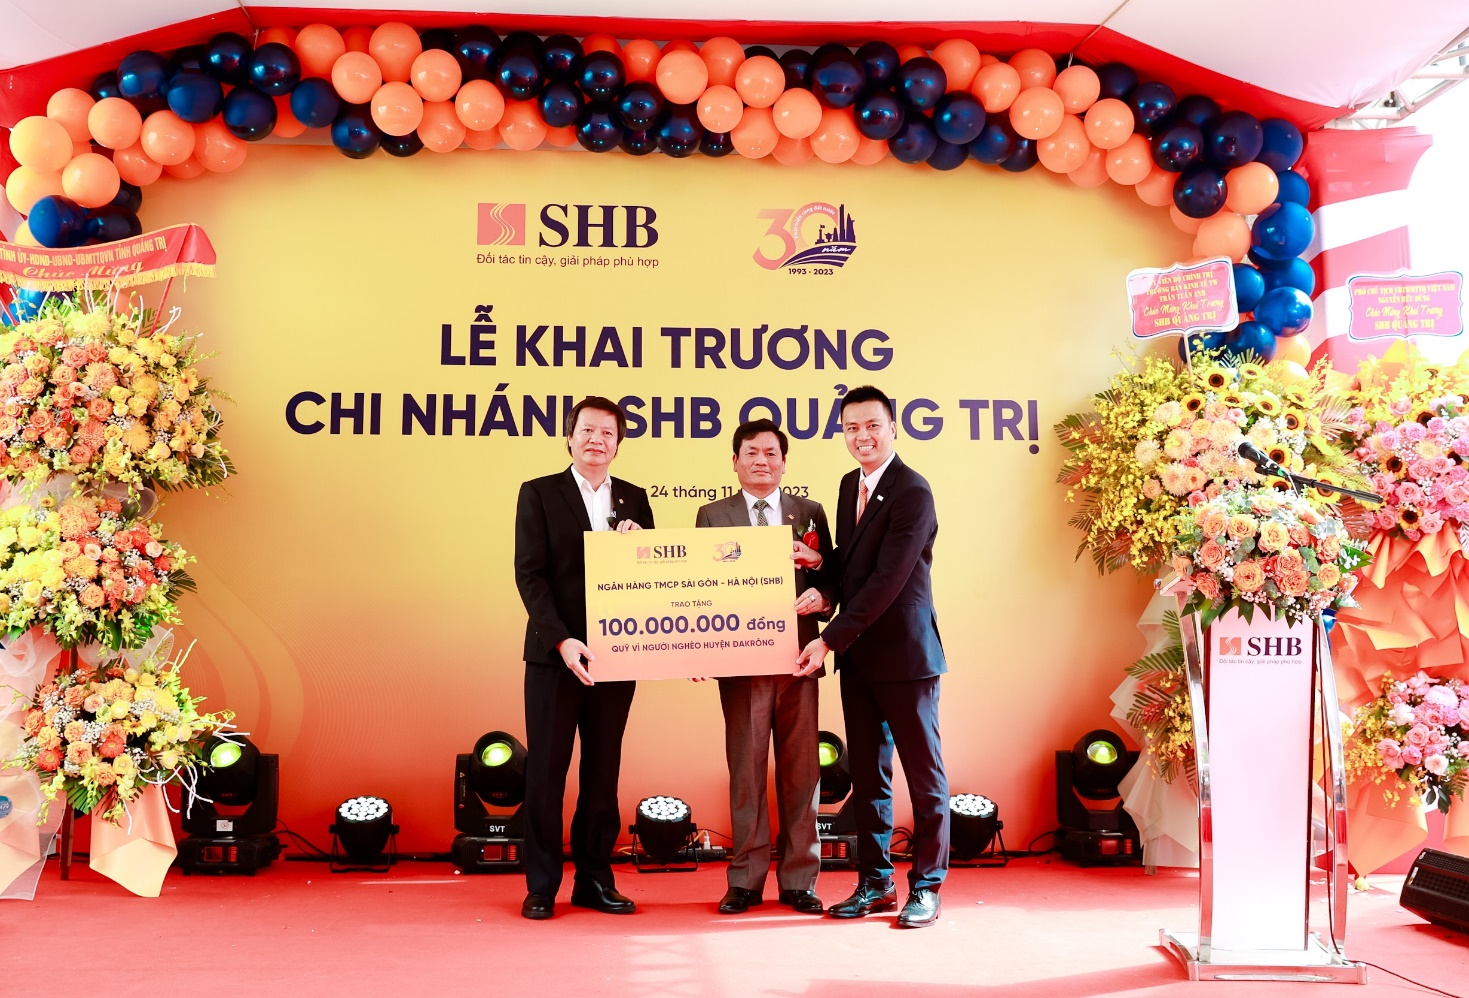 SHB khai trương chi nhánh Quảng Trị, mở rộng mạng lưới vùng Bắc Trung Bộ - Ảnh 2.